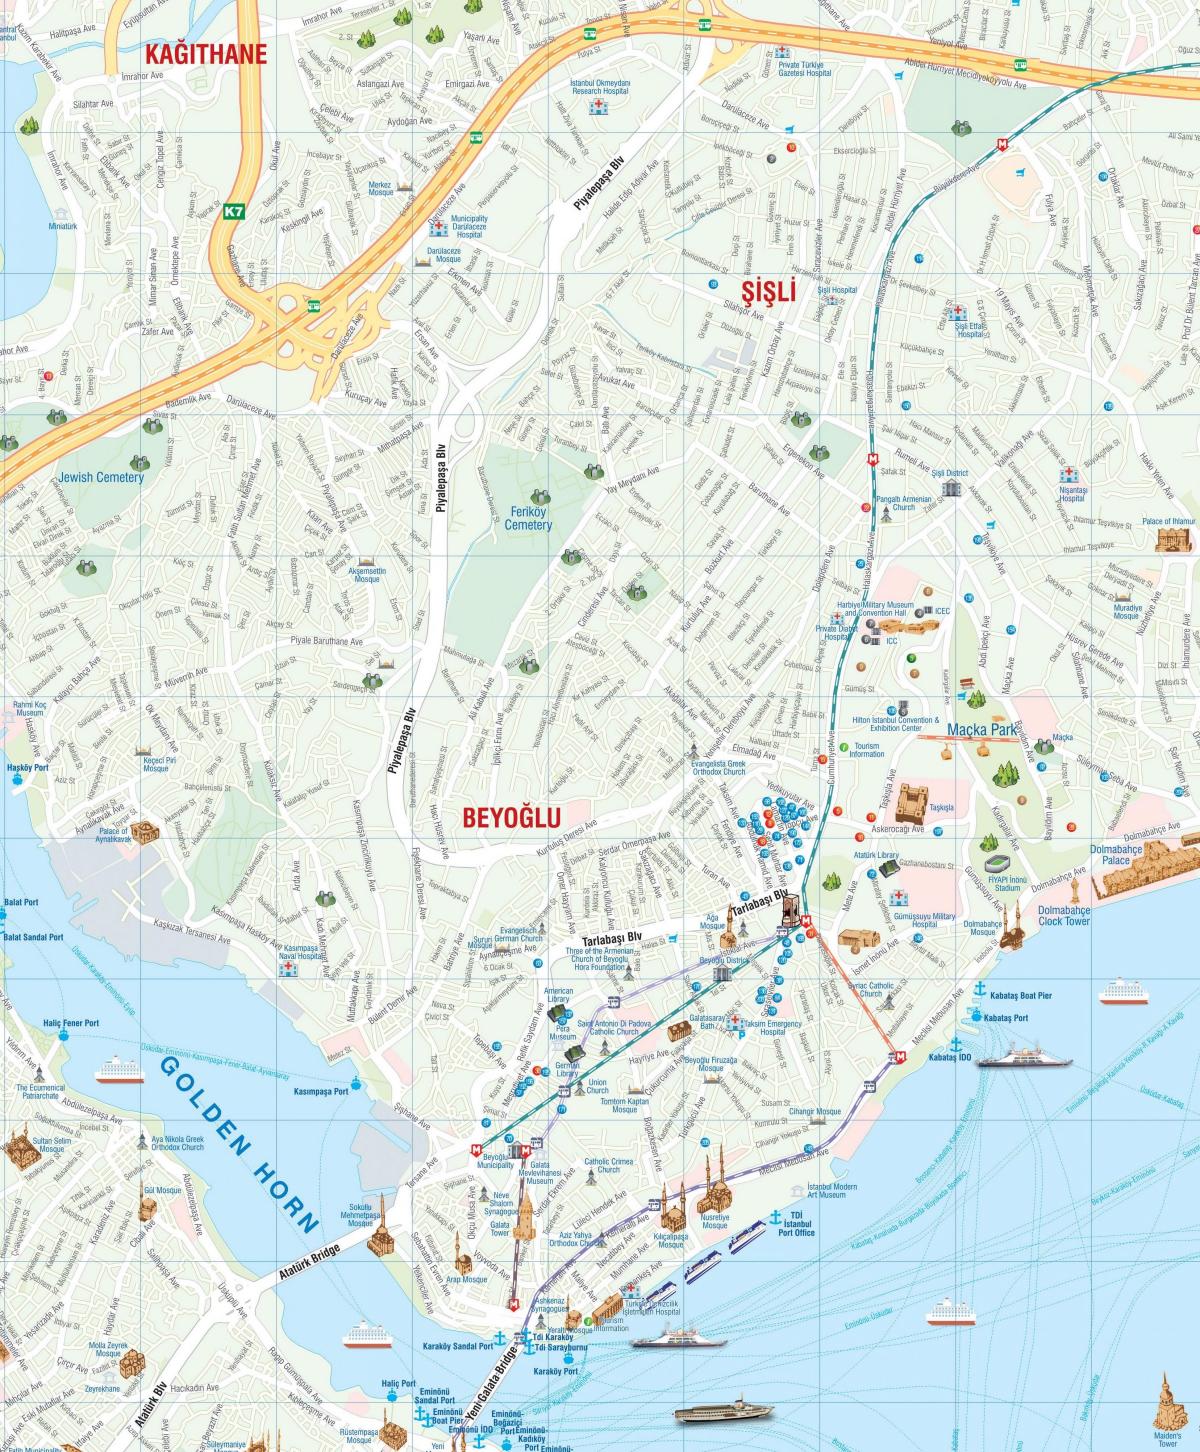 mapa de beyoglu de istambul